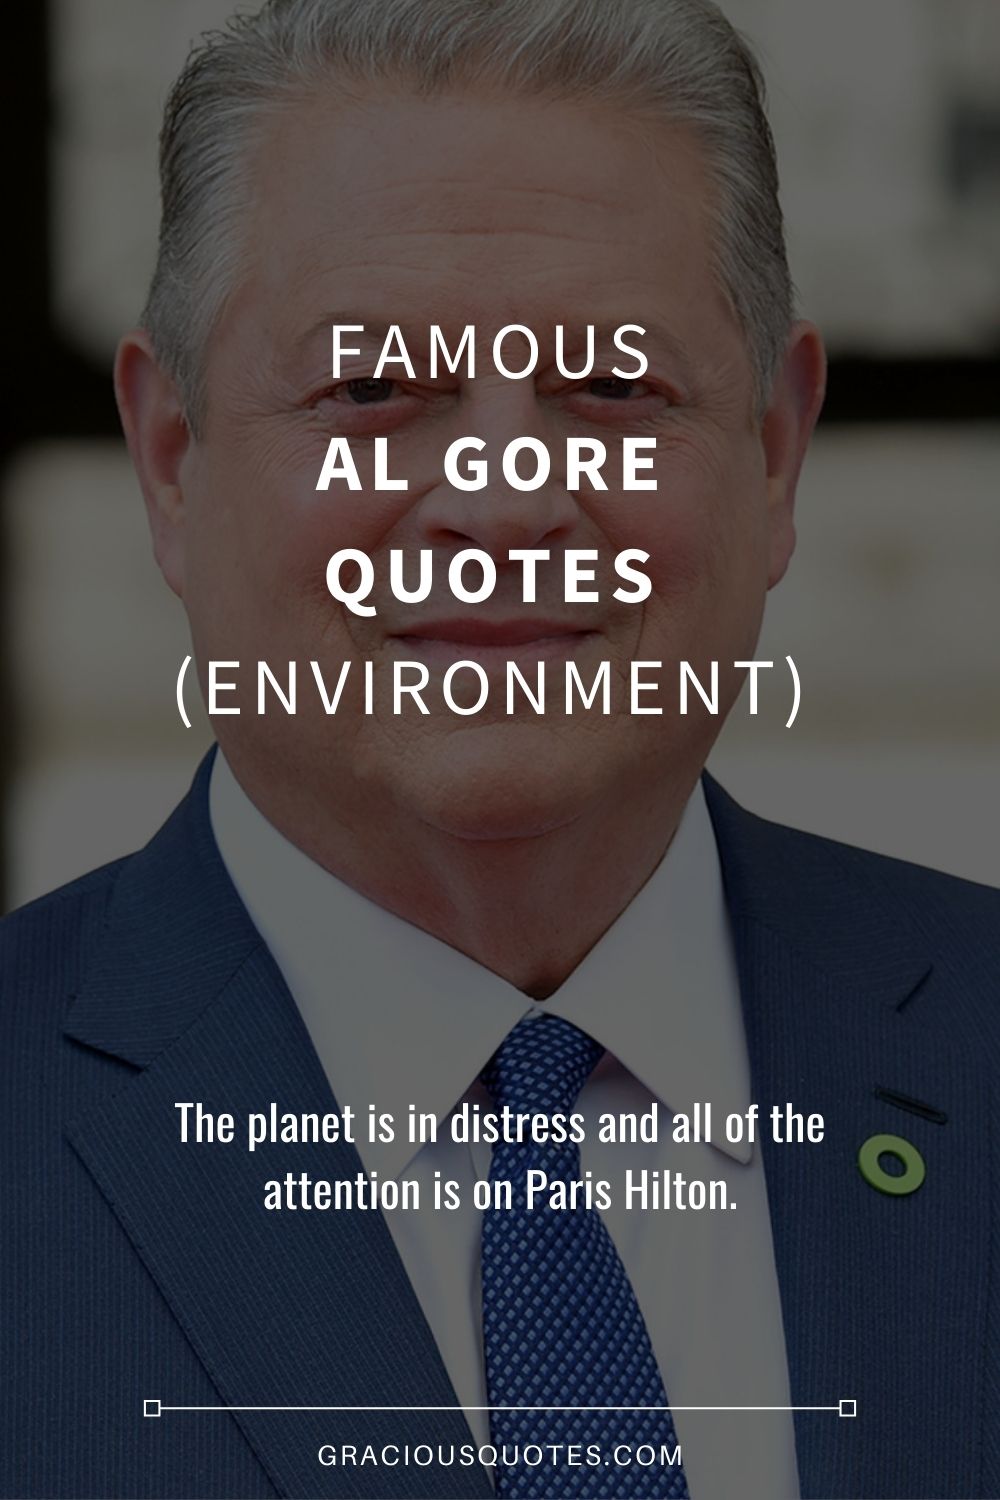 Famous Al Gore Quotes (ENVIRONMENT) - Gracious Quotes